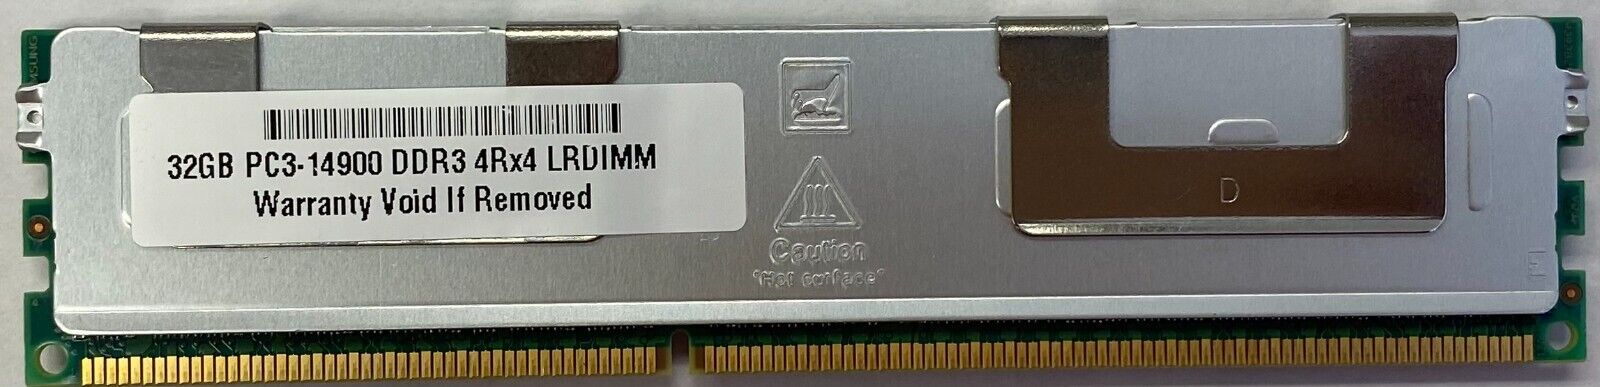 32GB Memory for IBM System x3550 M4 7914-xxx, x3750 M4 4RX4 PC3-14900L LRDIMM